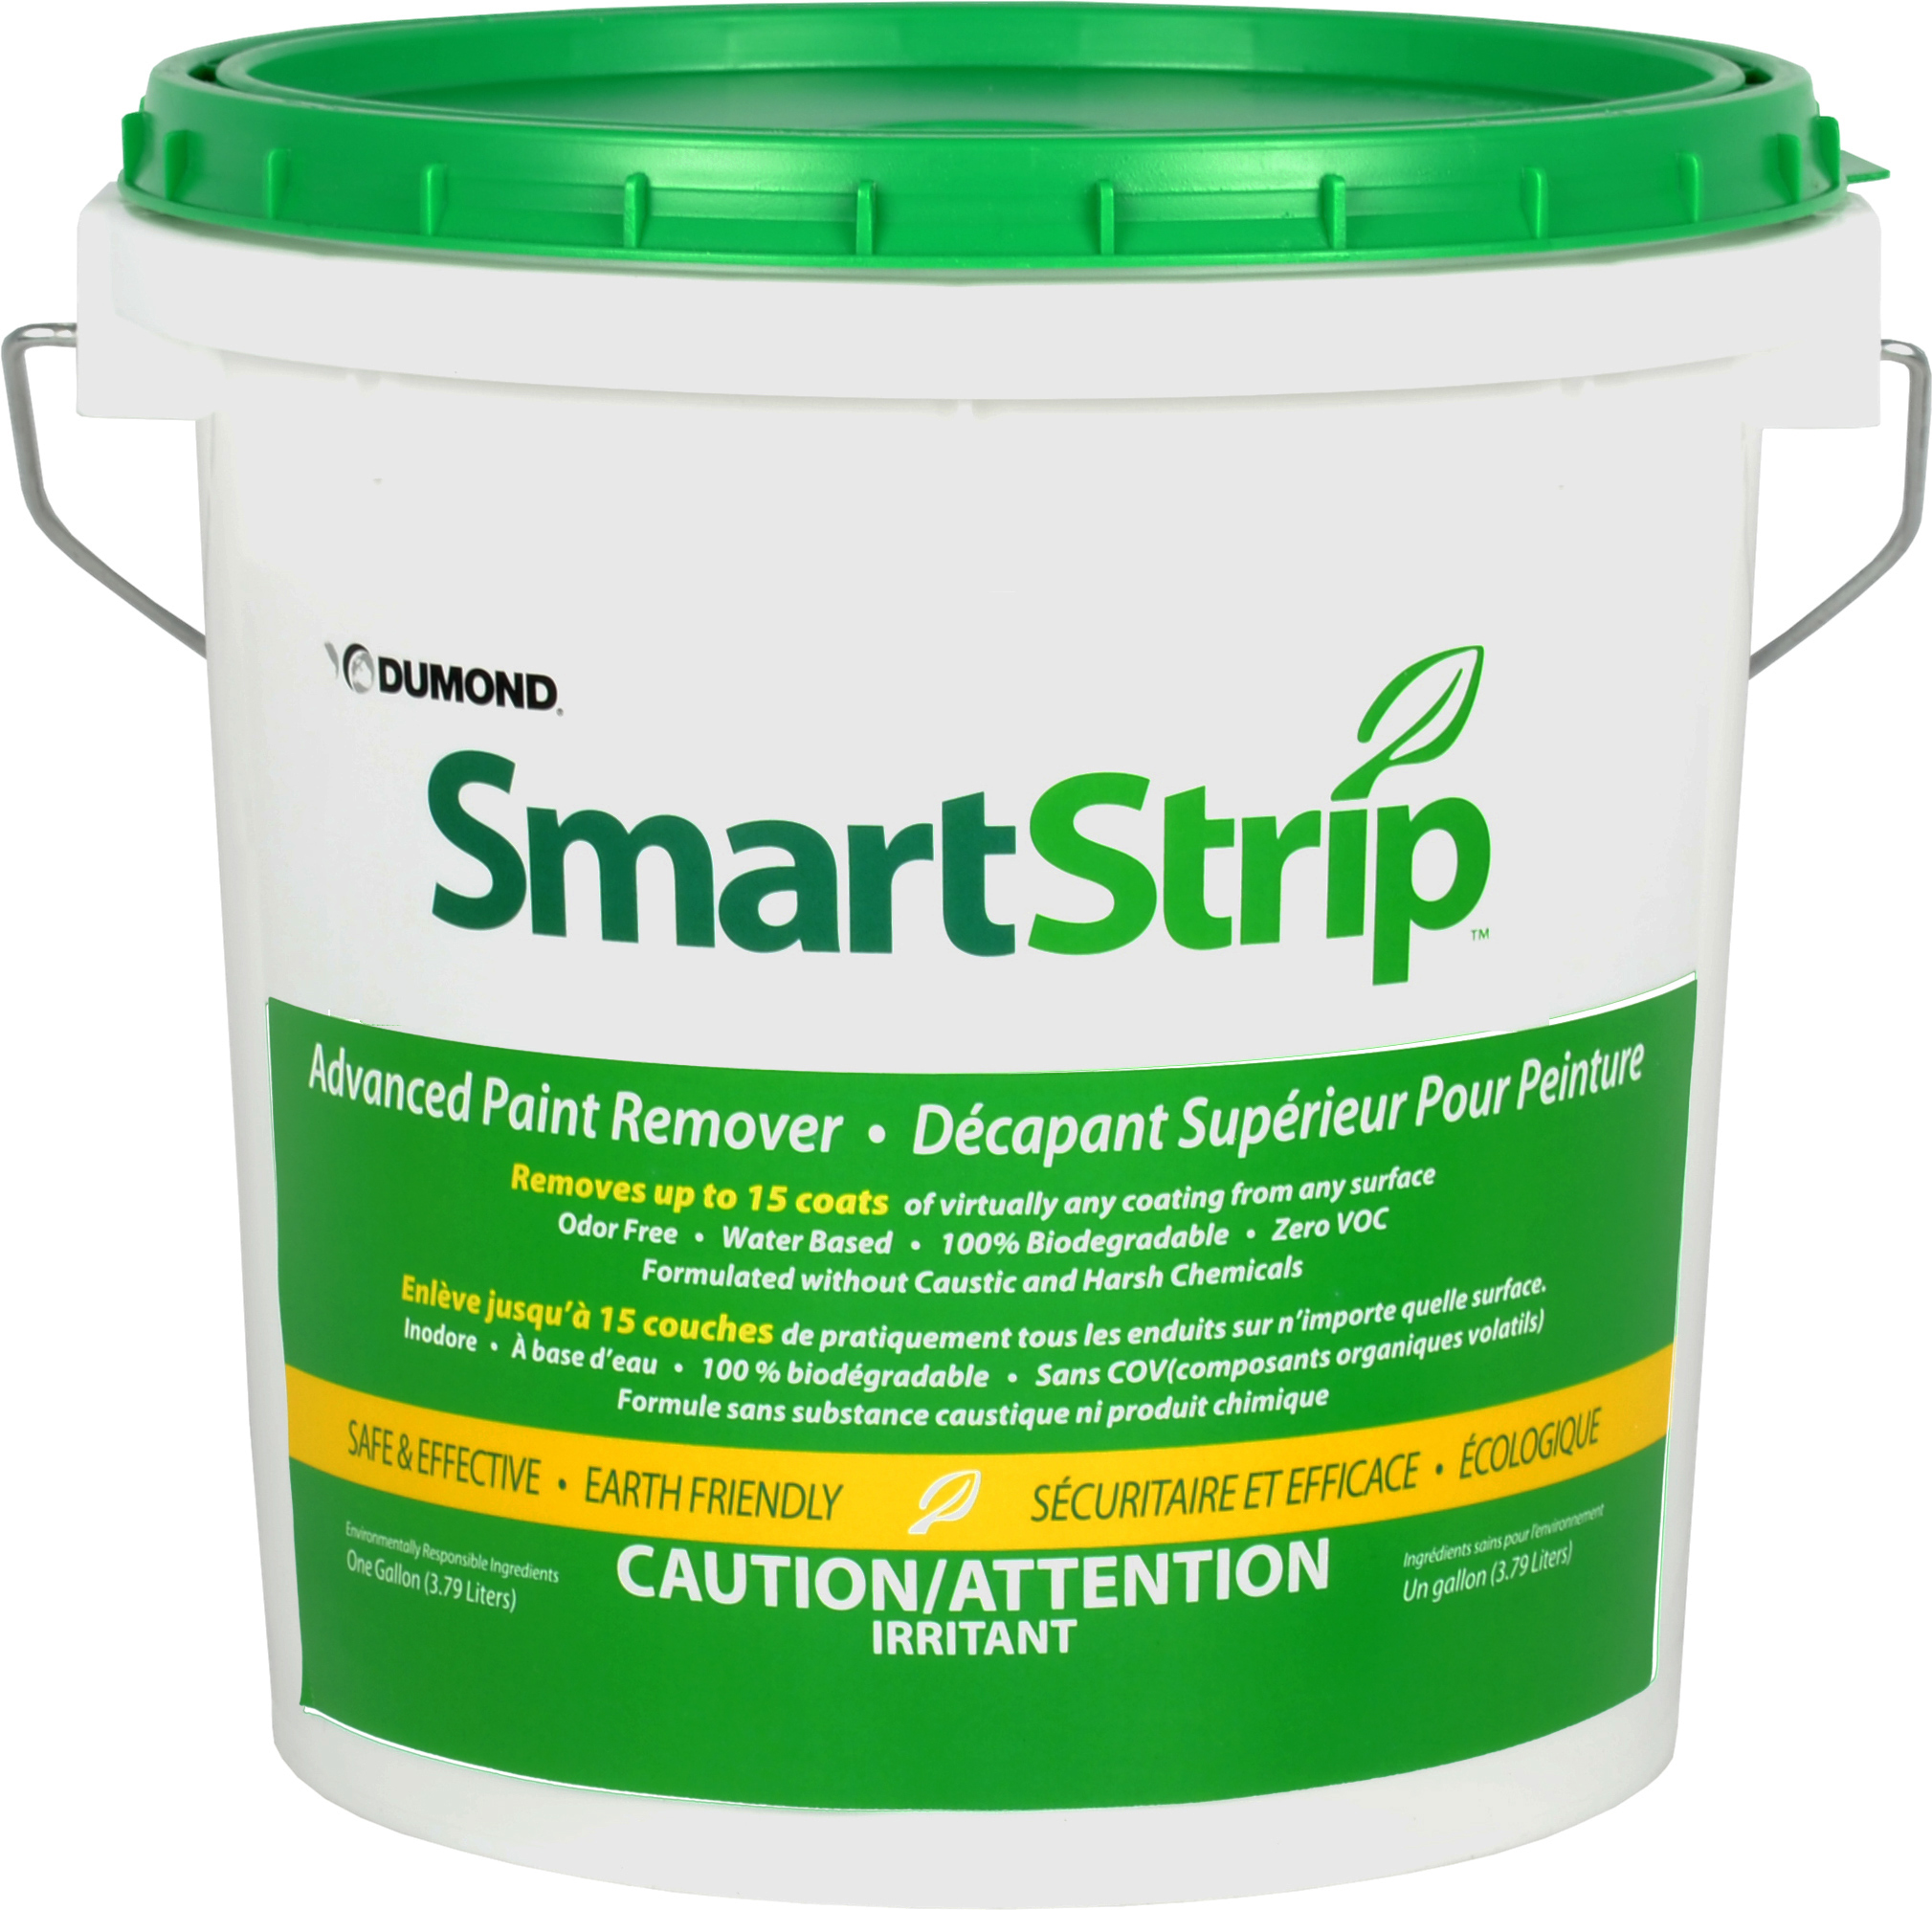 Smart Strip - Décapant supérieur pour peinture - Dumond - Ardec